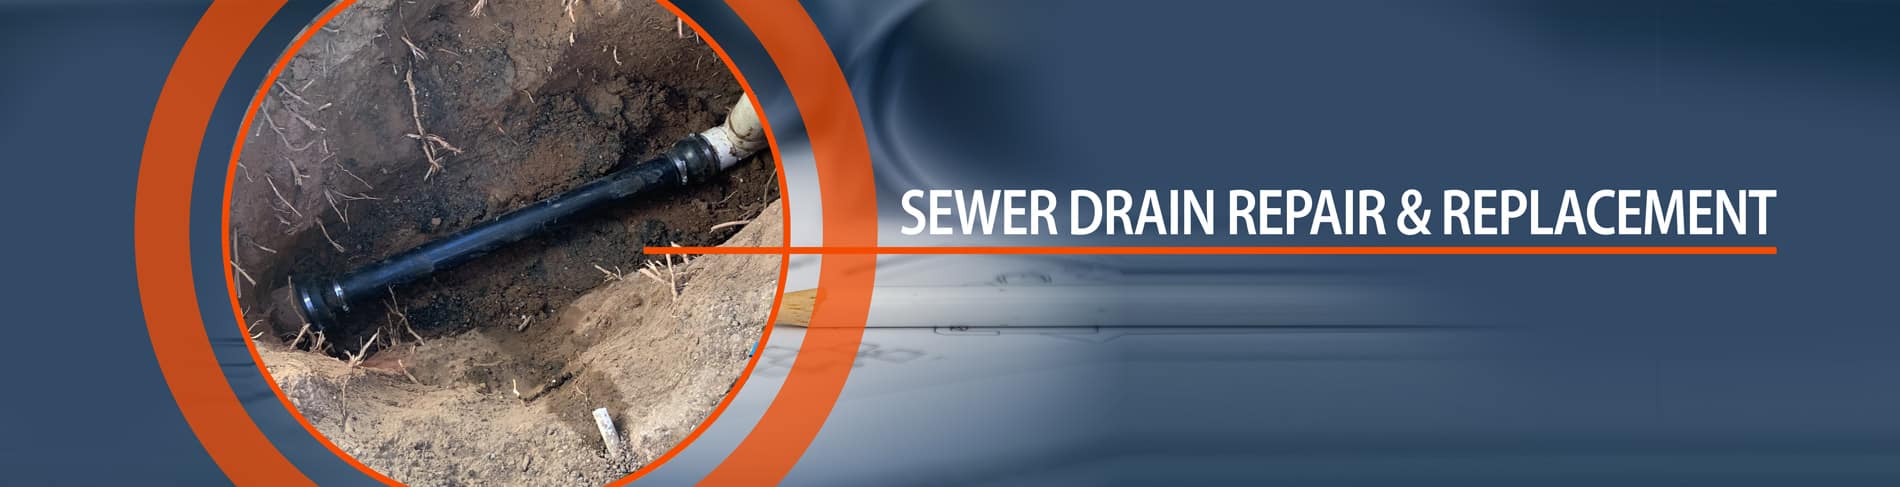 sewer drain repair and replacement Arizona